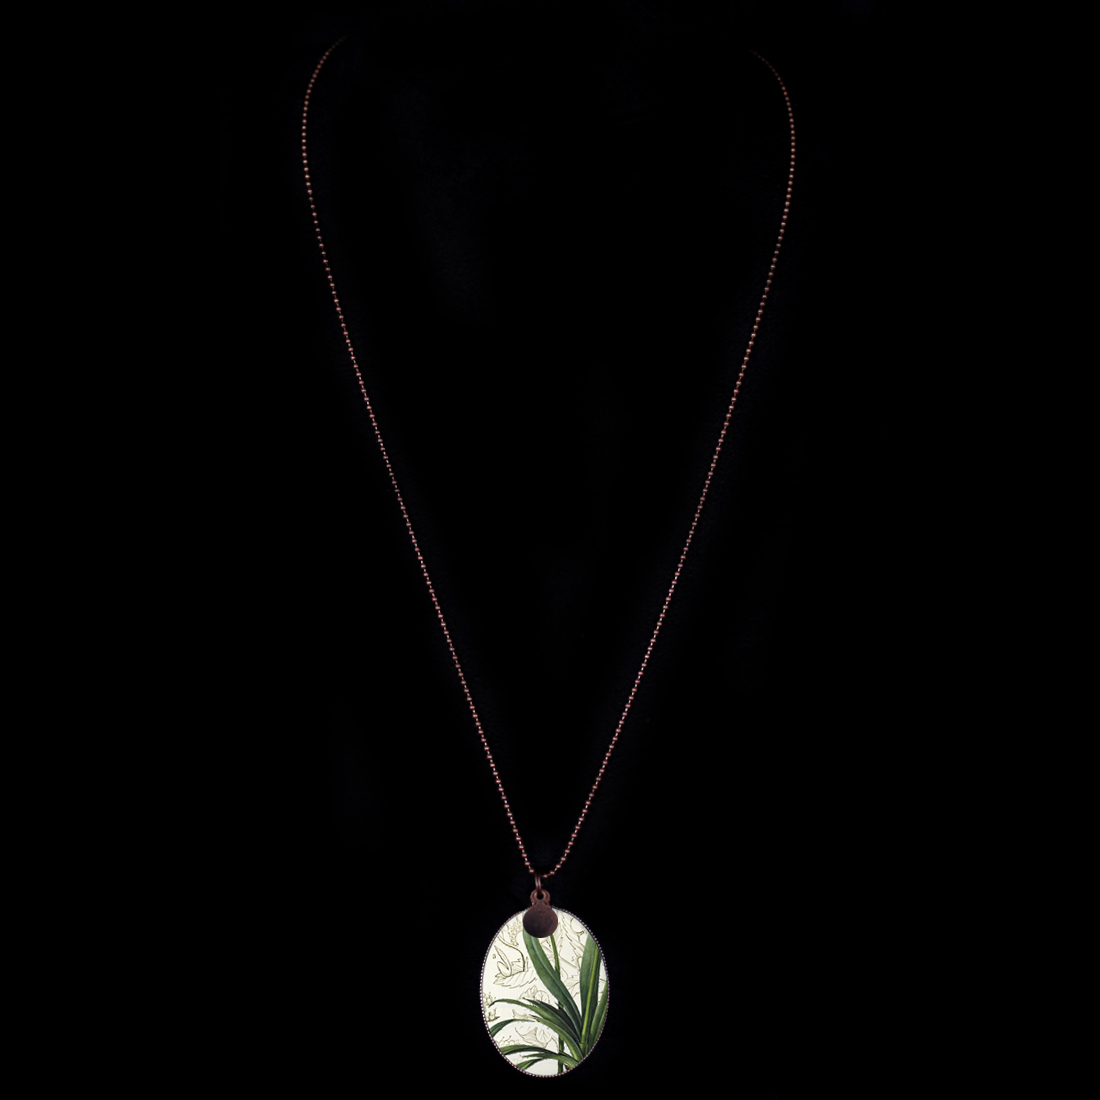 Collana in catena a pallini in rame con medaglione in porcellana decorato con foglie verdi a tema natura. Idea regalo per amanti del giardino, del verde della botanica.